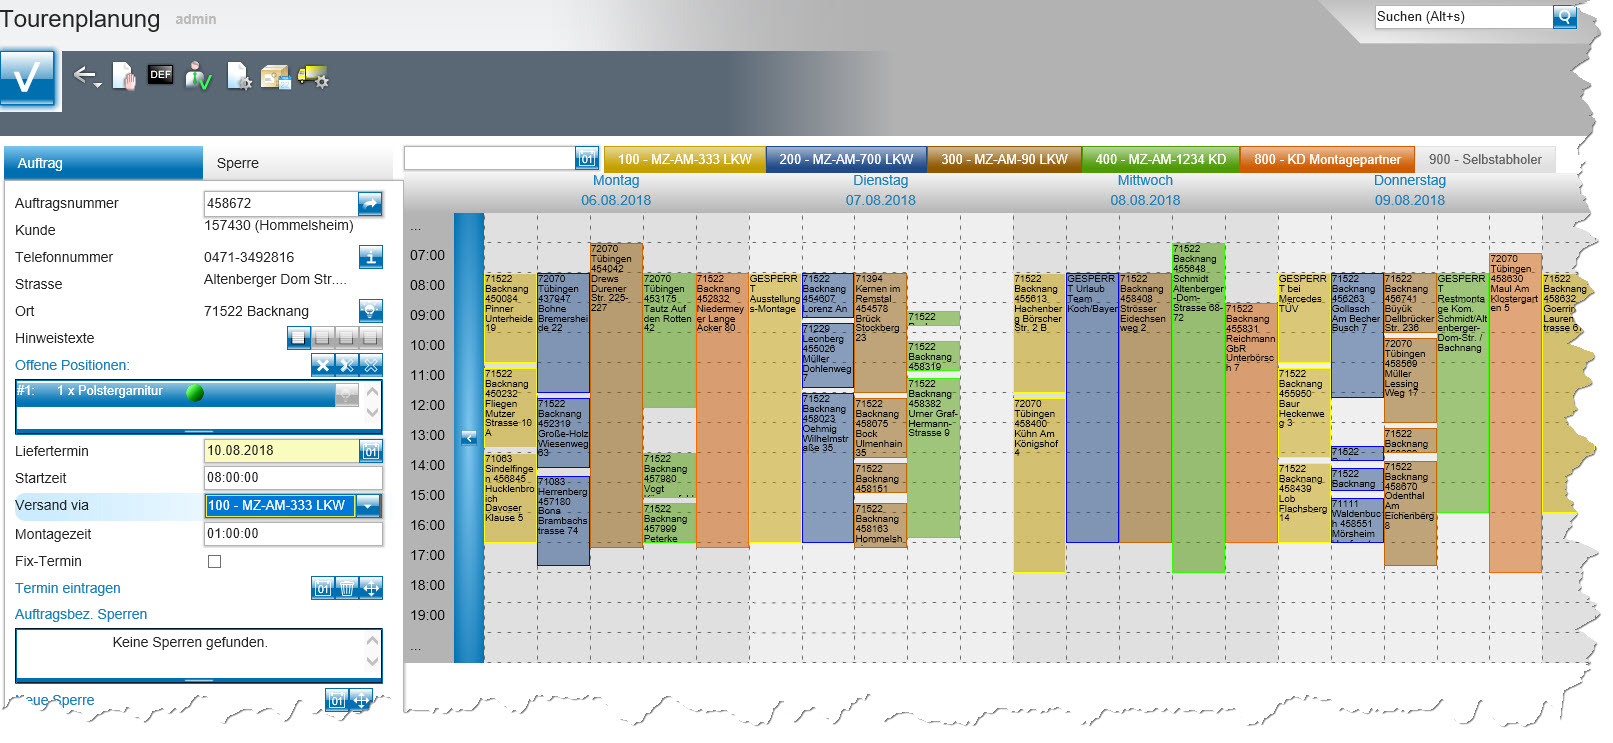 Digitale Planungstafel in der Tourenplanungssoftware